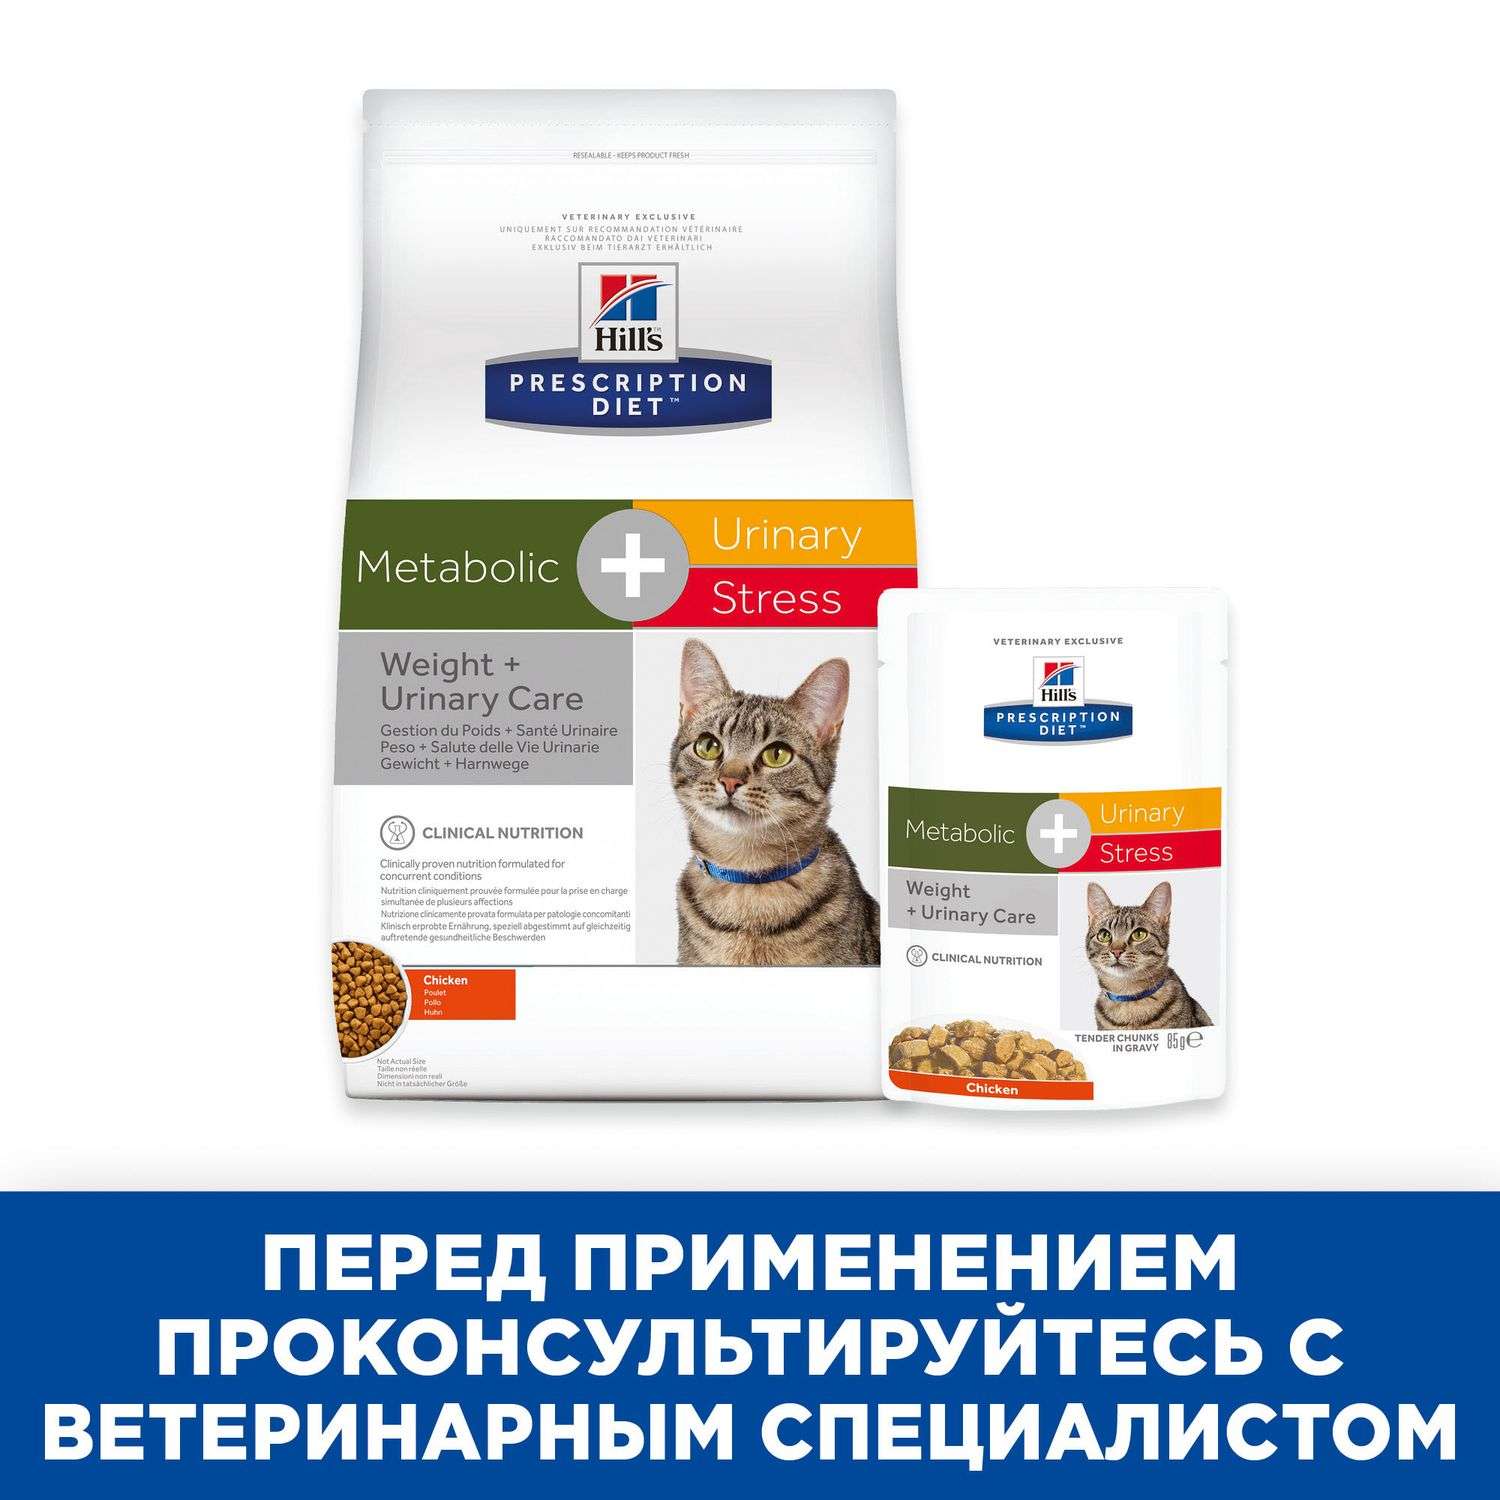 Корм для кошек HILLS 85г Prescription Diet Metabolic Urinary Stress Feline для коррекции веса и поддержания здоровья при МКБ с курицей пауч - фото 5